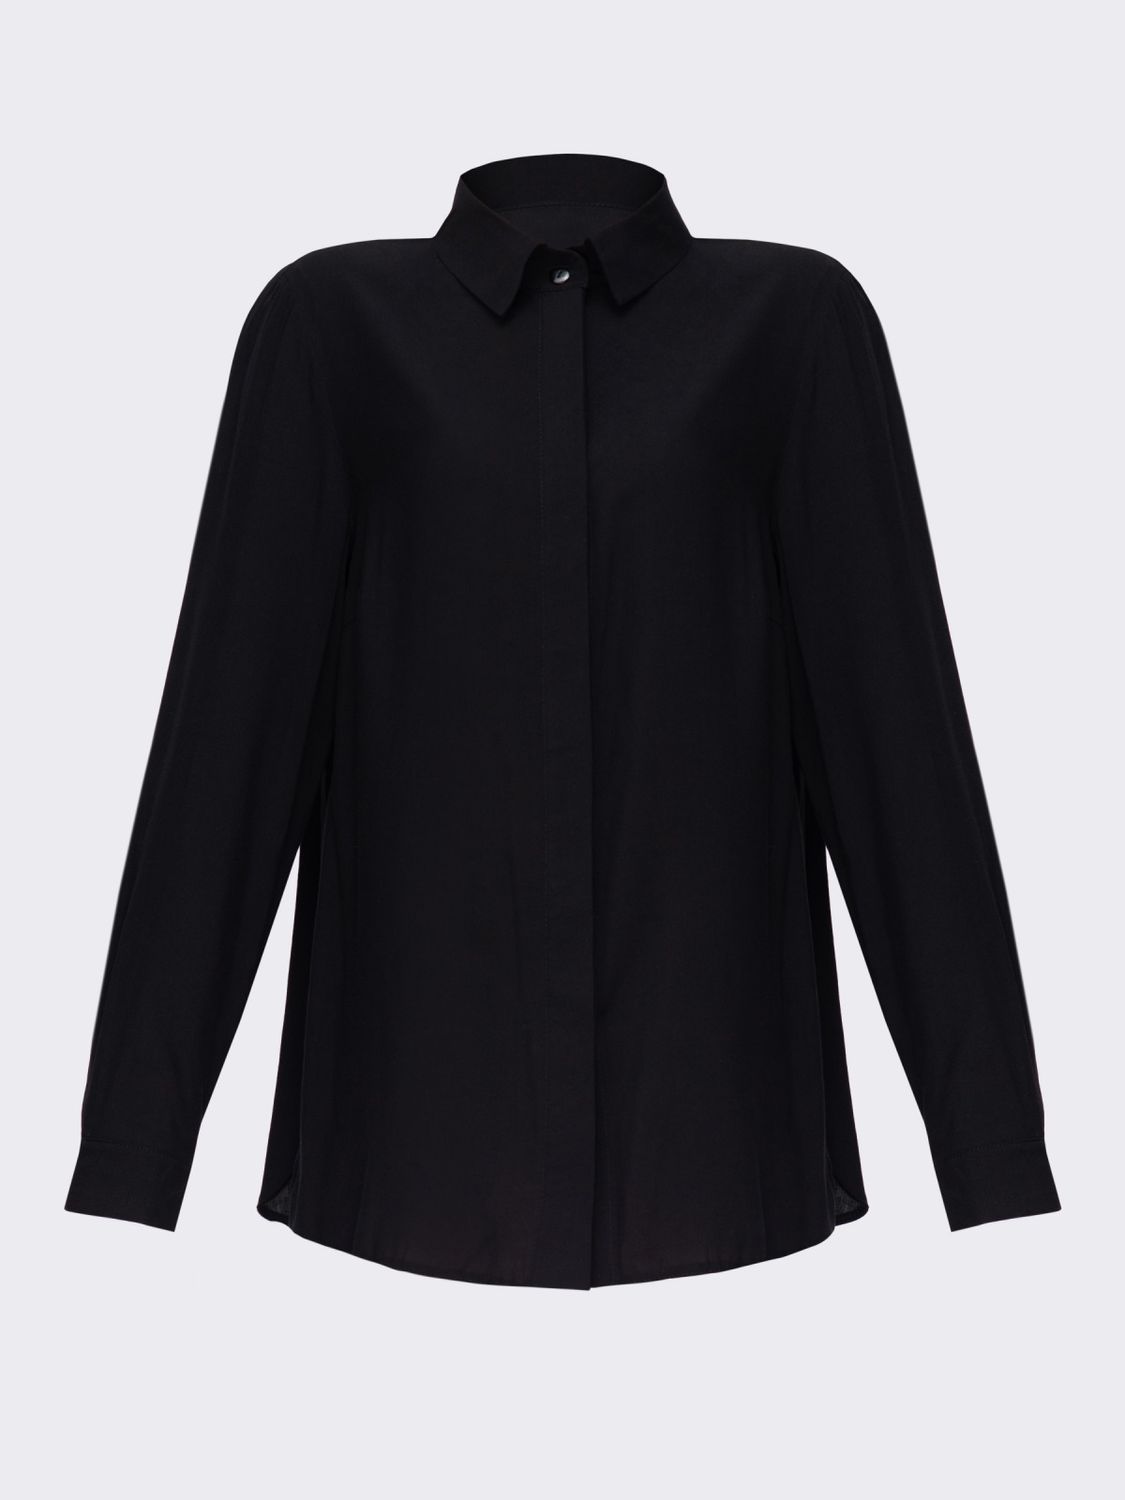 Классическая женская рубашка черного цвета - фото